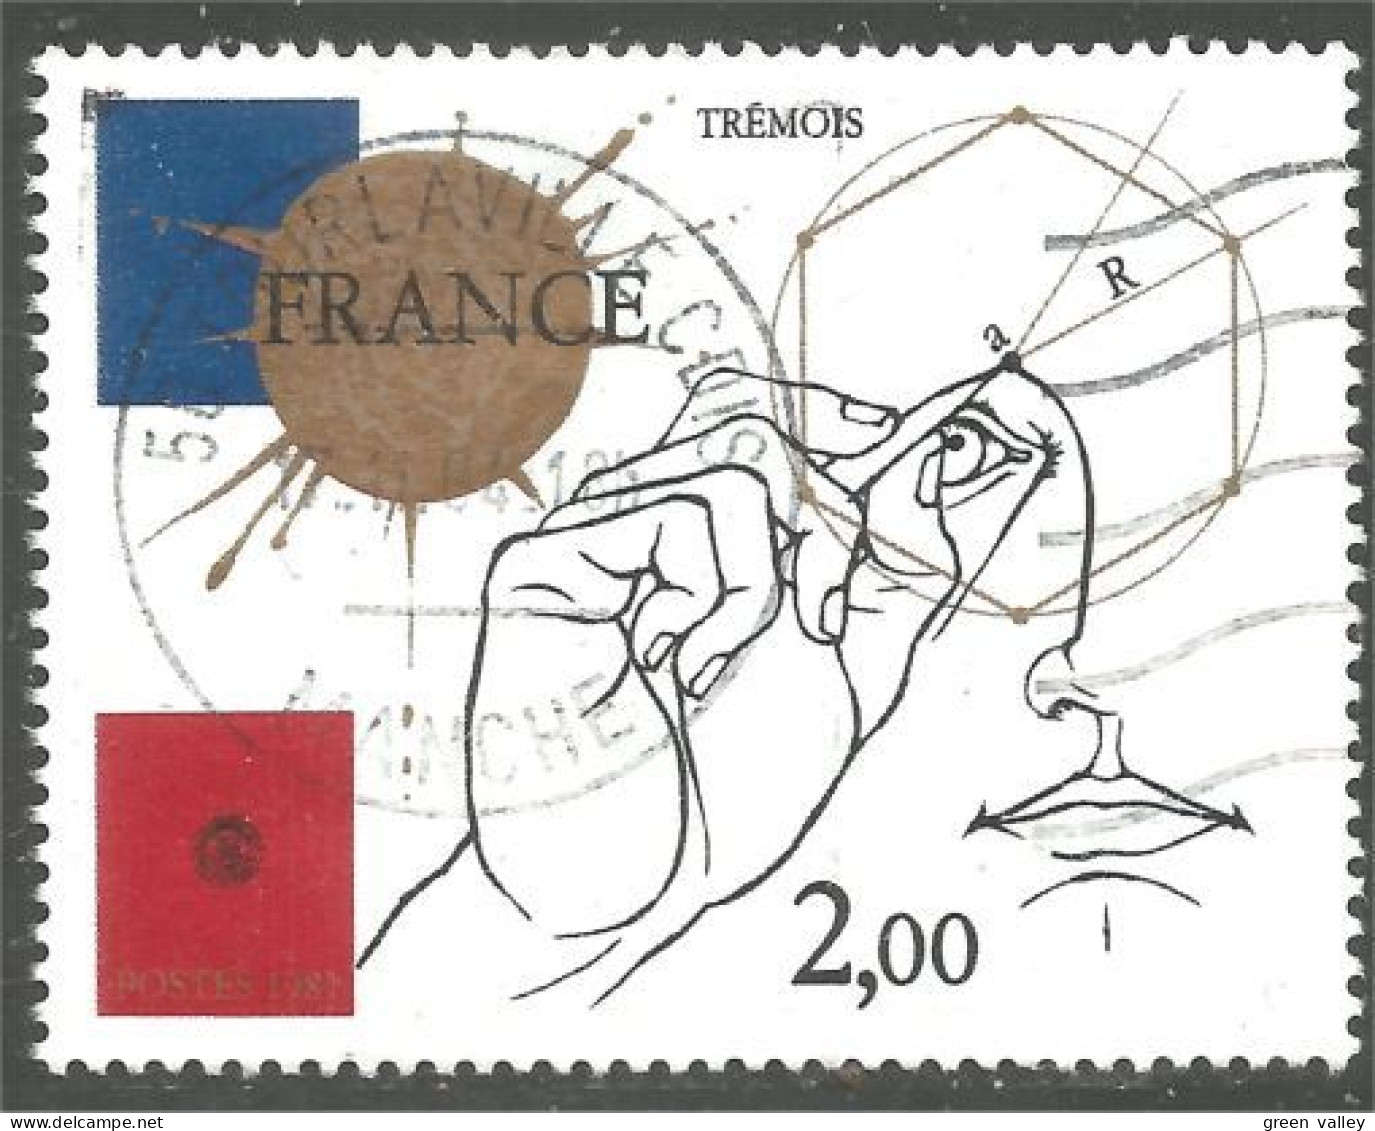 331nf-46 France Gravure Trémois Engraving - Gebraucht